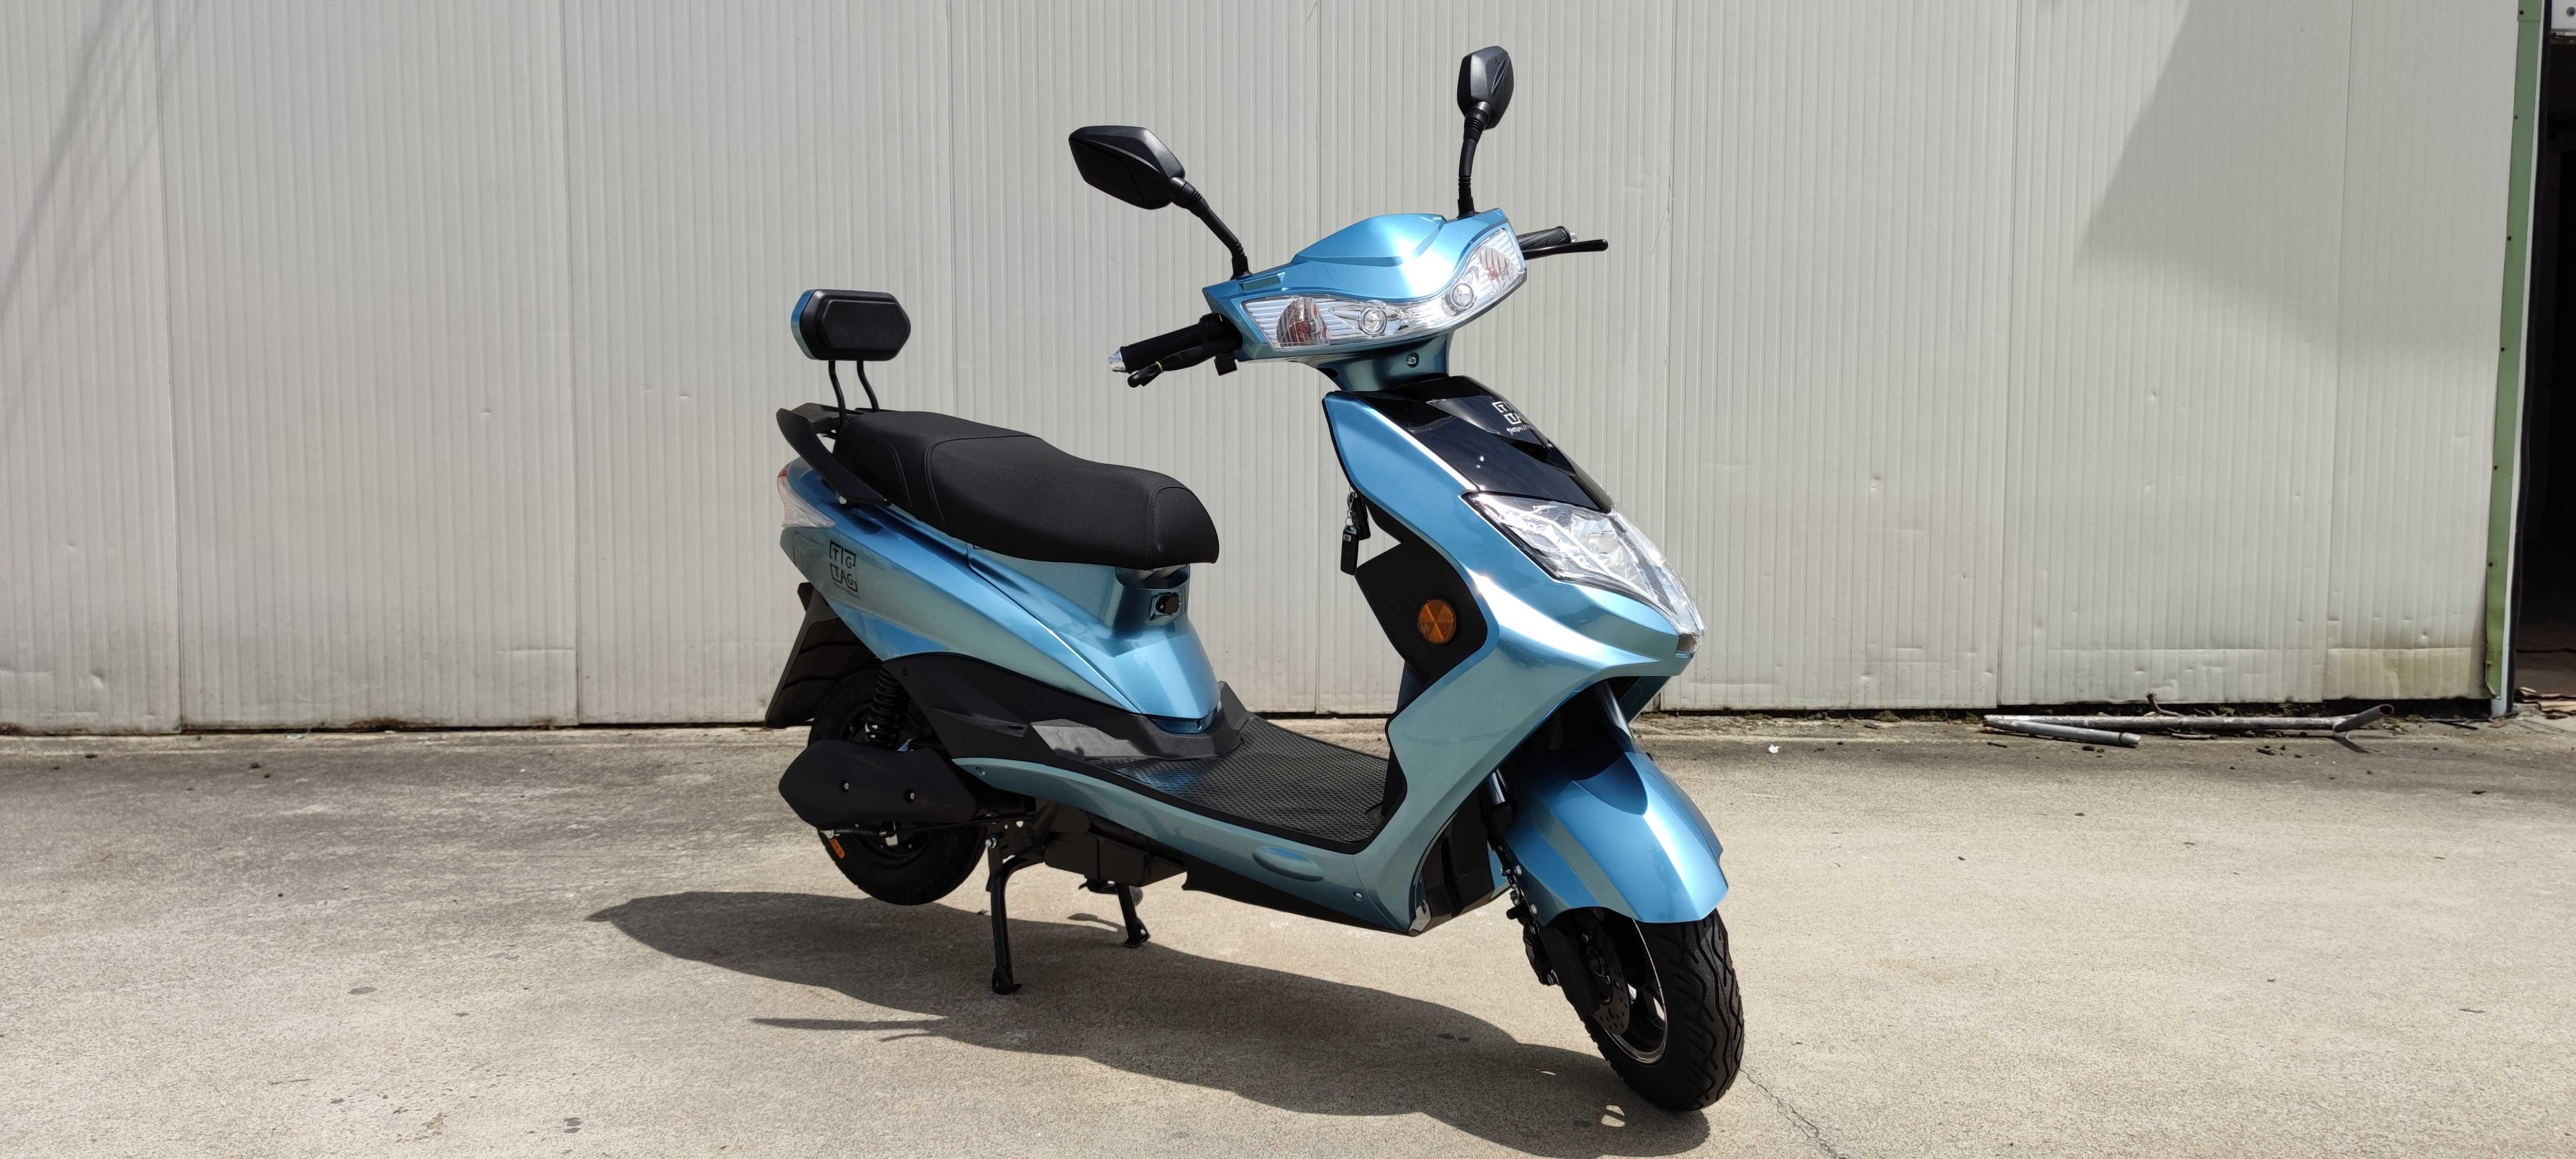 Електрически скутер My Force модел ЕМ006 син цвят с регистрация